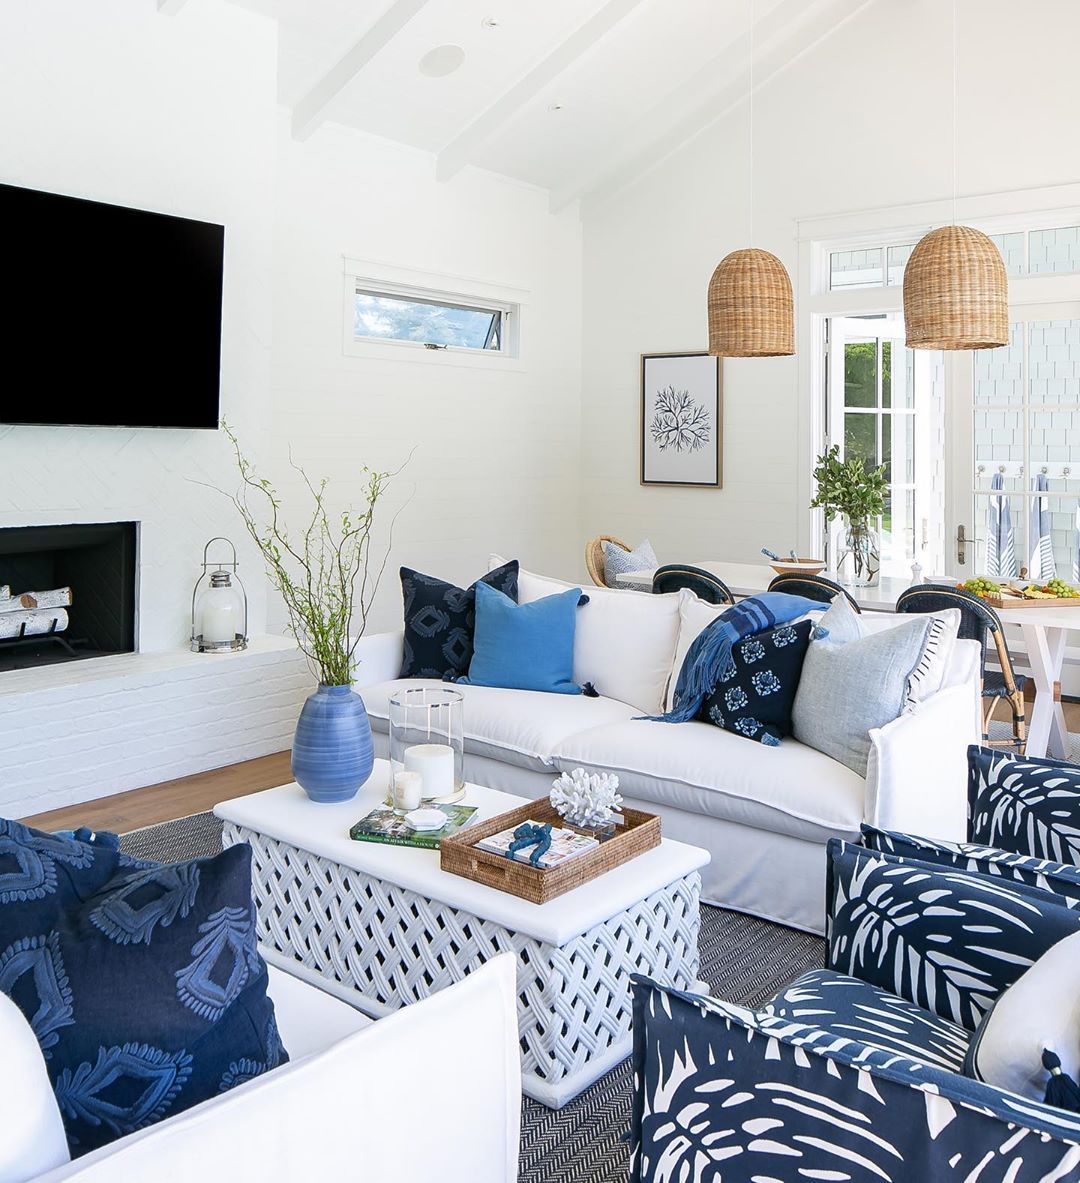 39 coastal living room ideas to inspire you